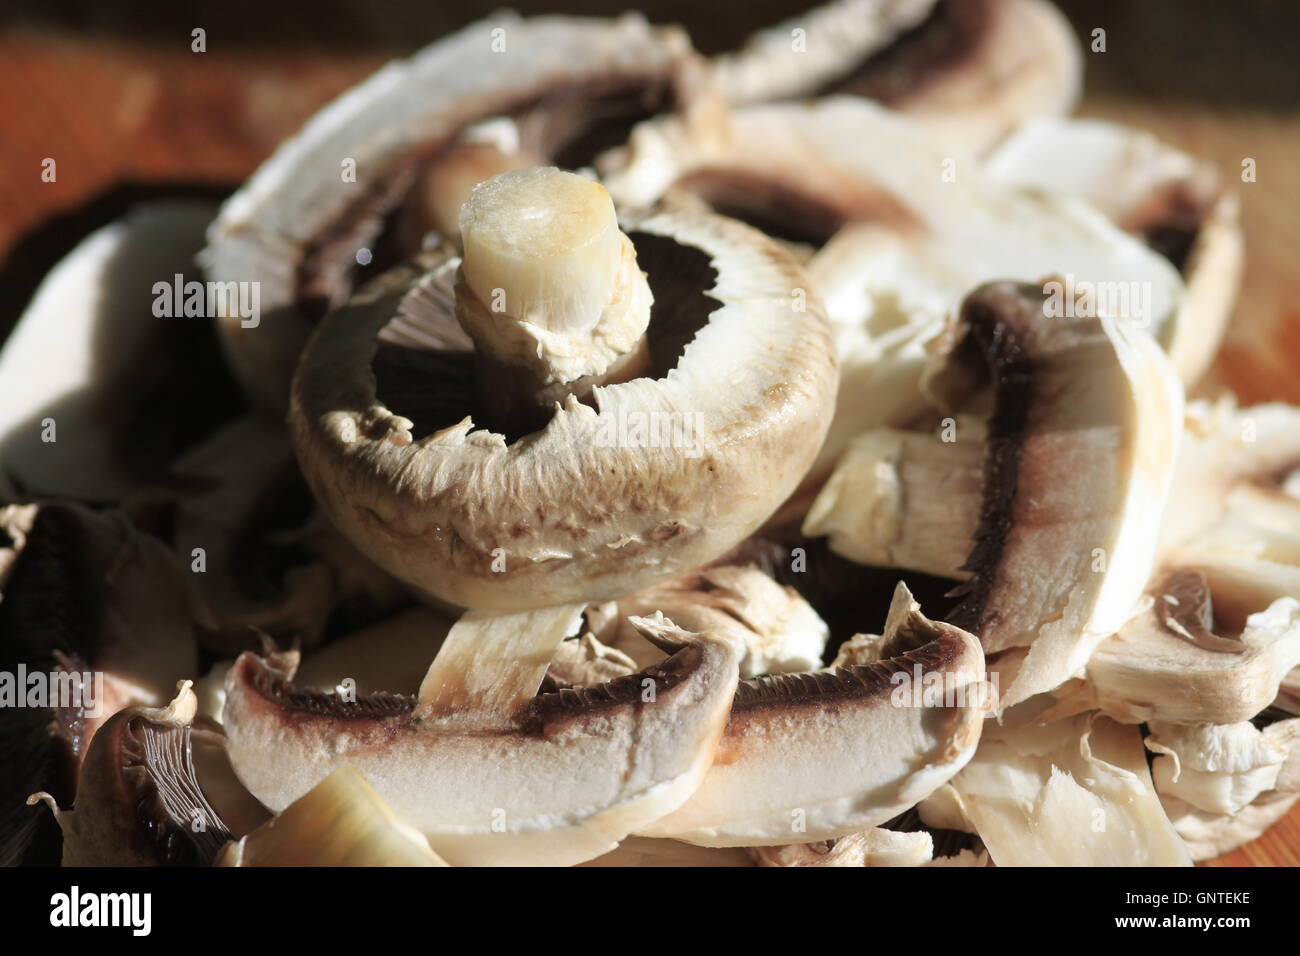 Zubereitung von Speisen - Pilze weiß auf Holz Küchenarbeitsplatte warten gekocht werden. Nahaufnahme von Pilz Kiemen. Stockfoto